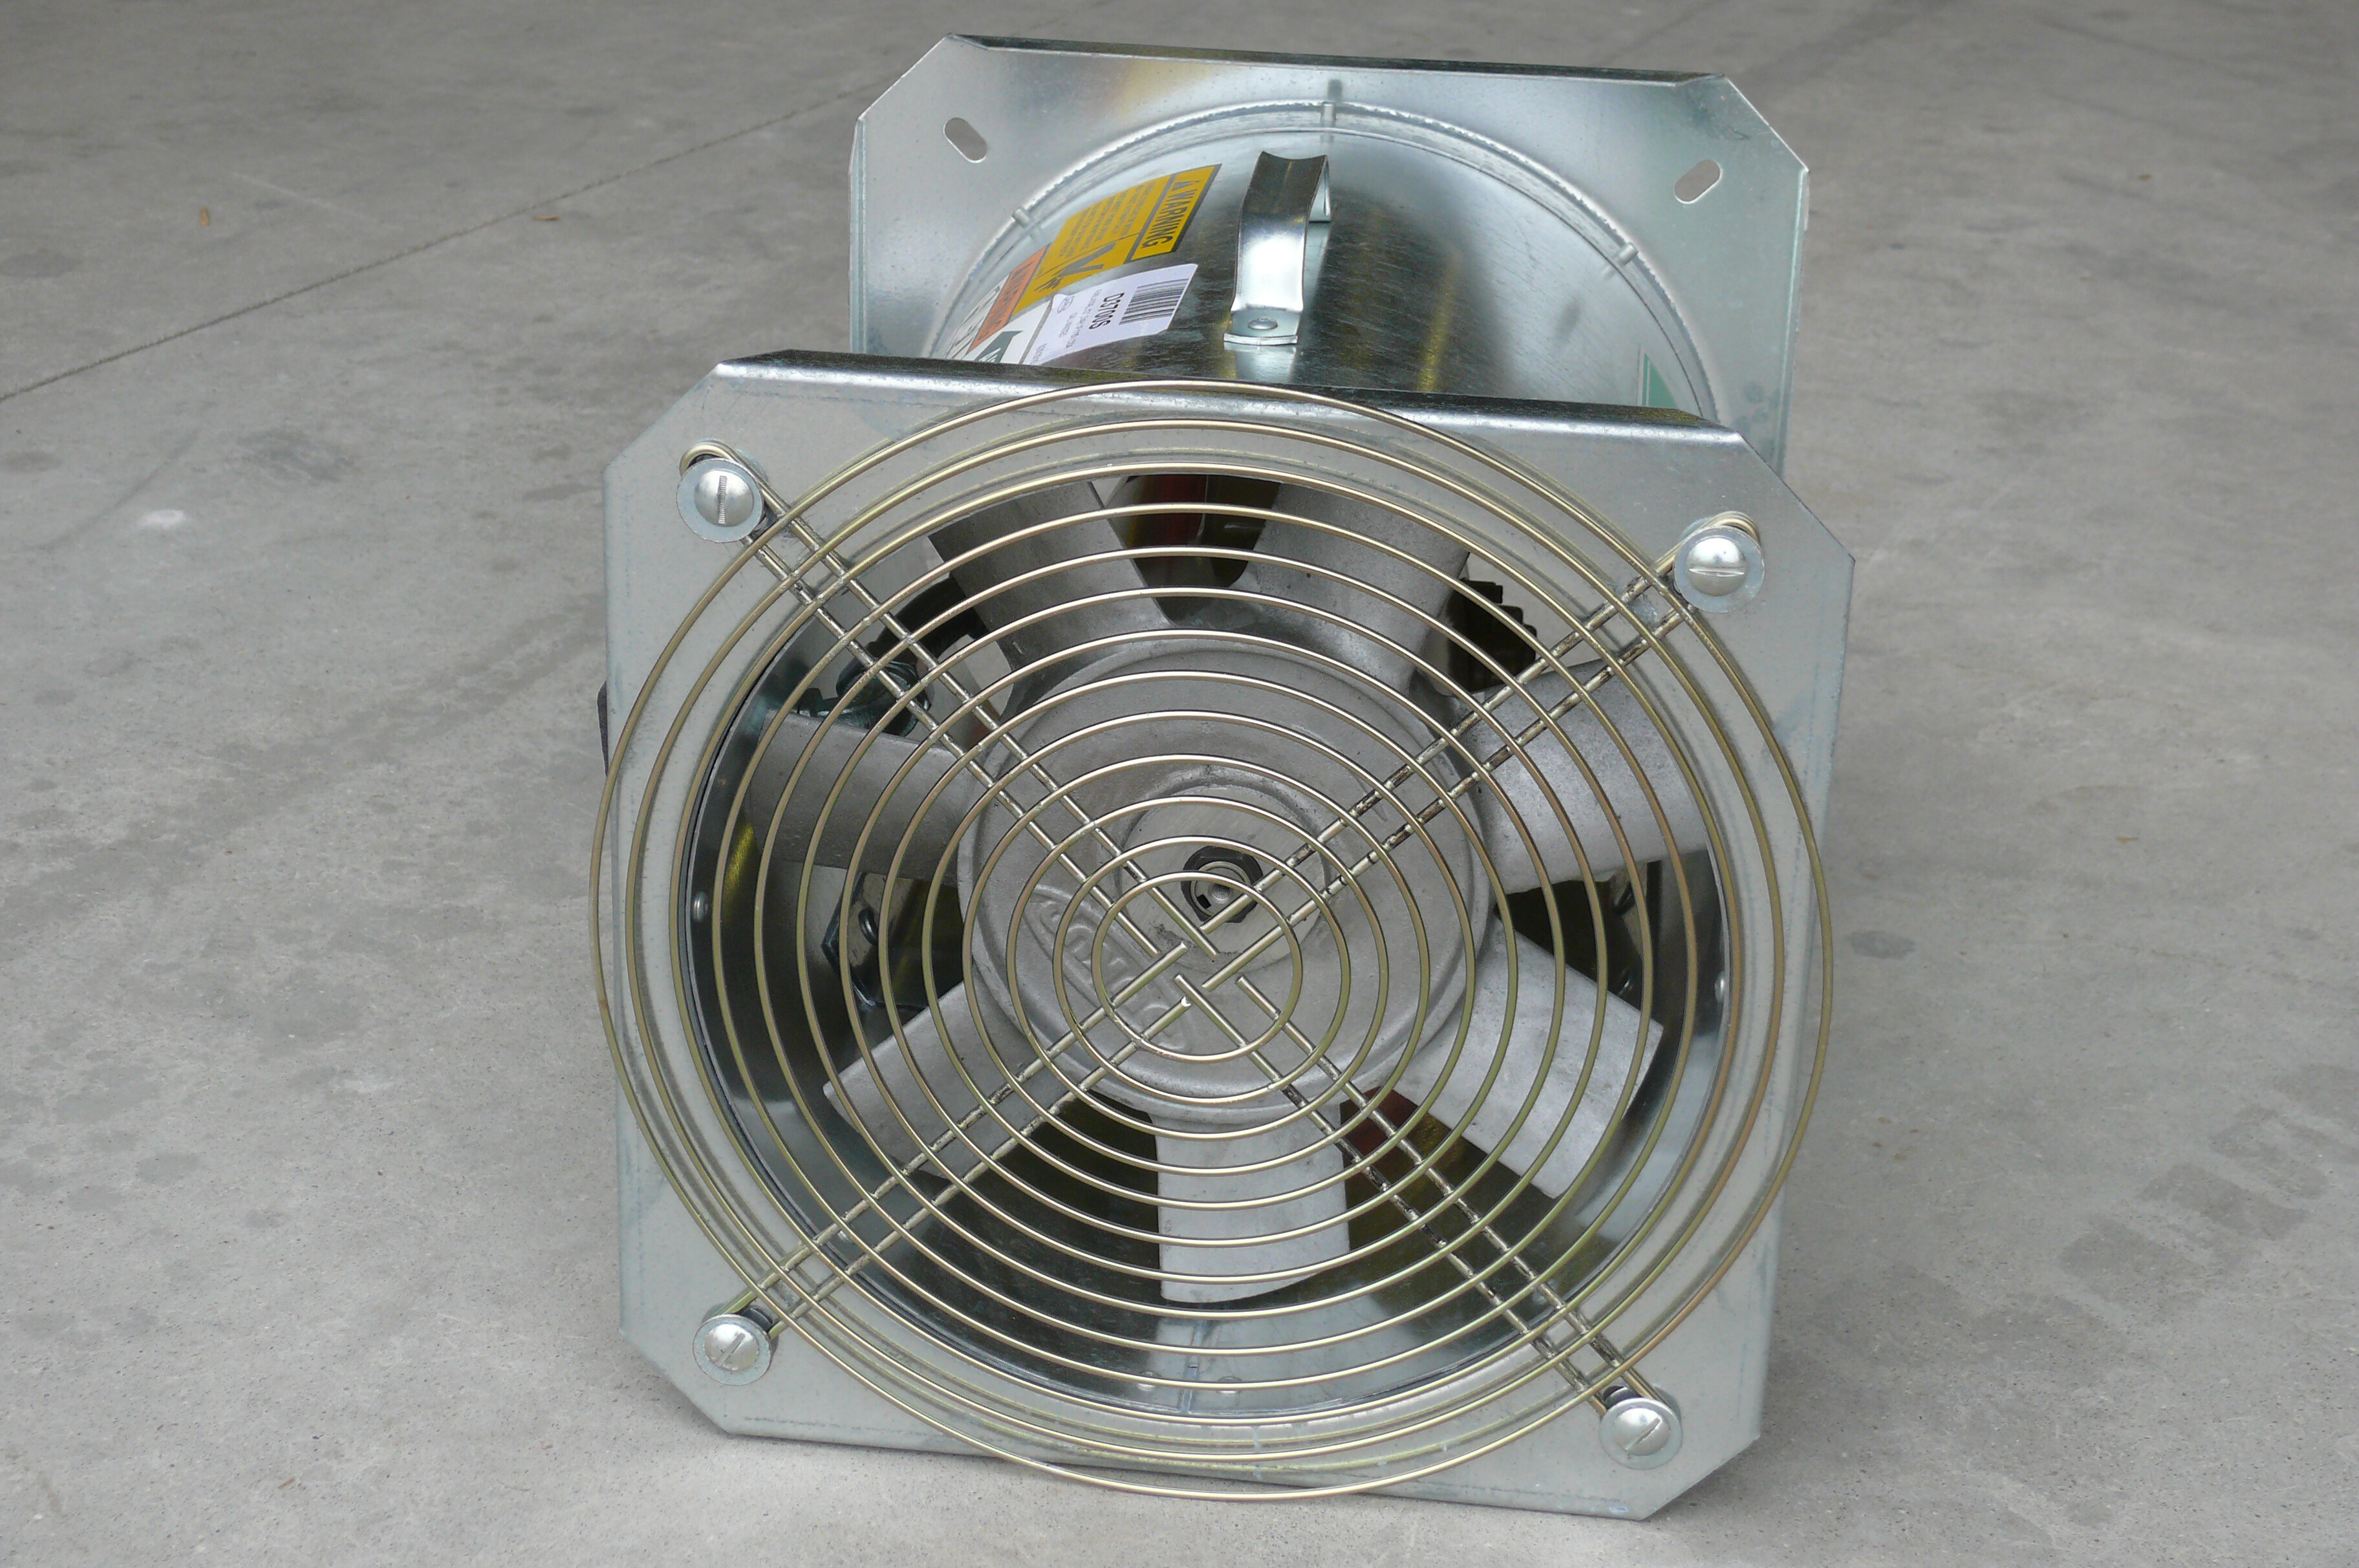 An axial flow fan